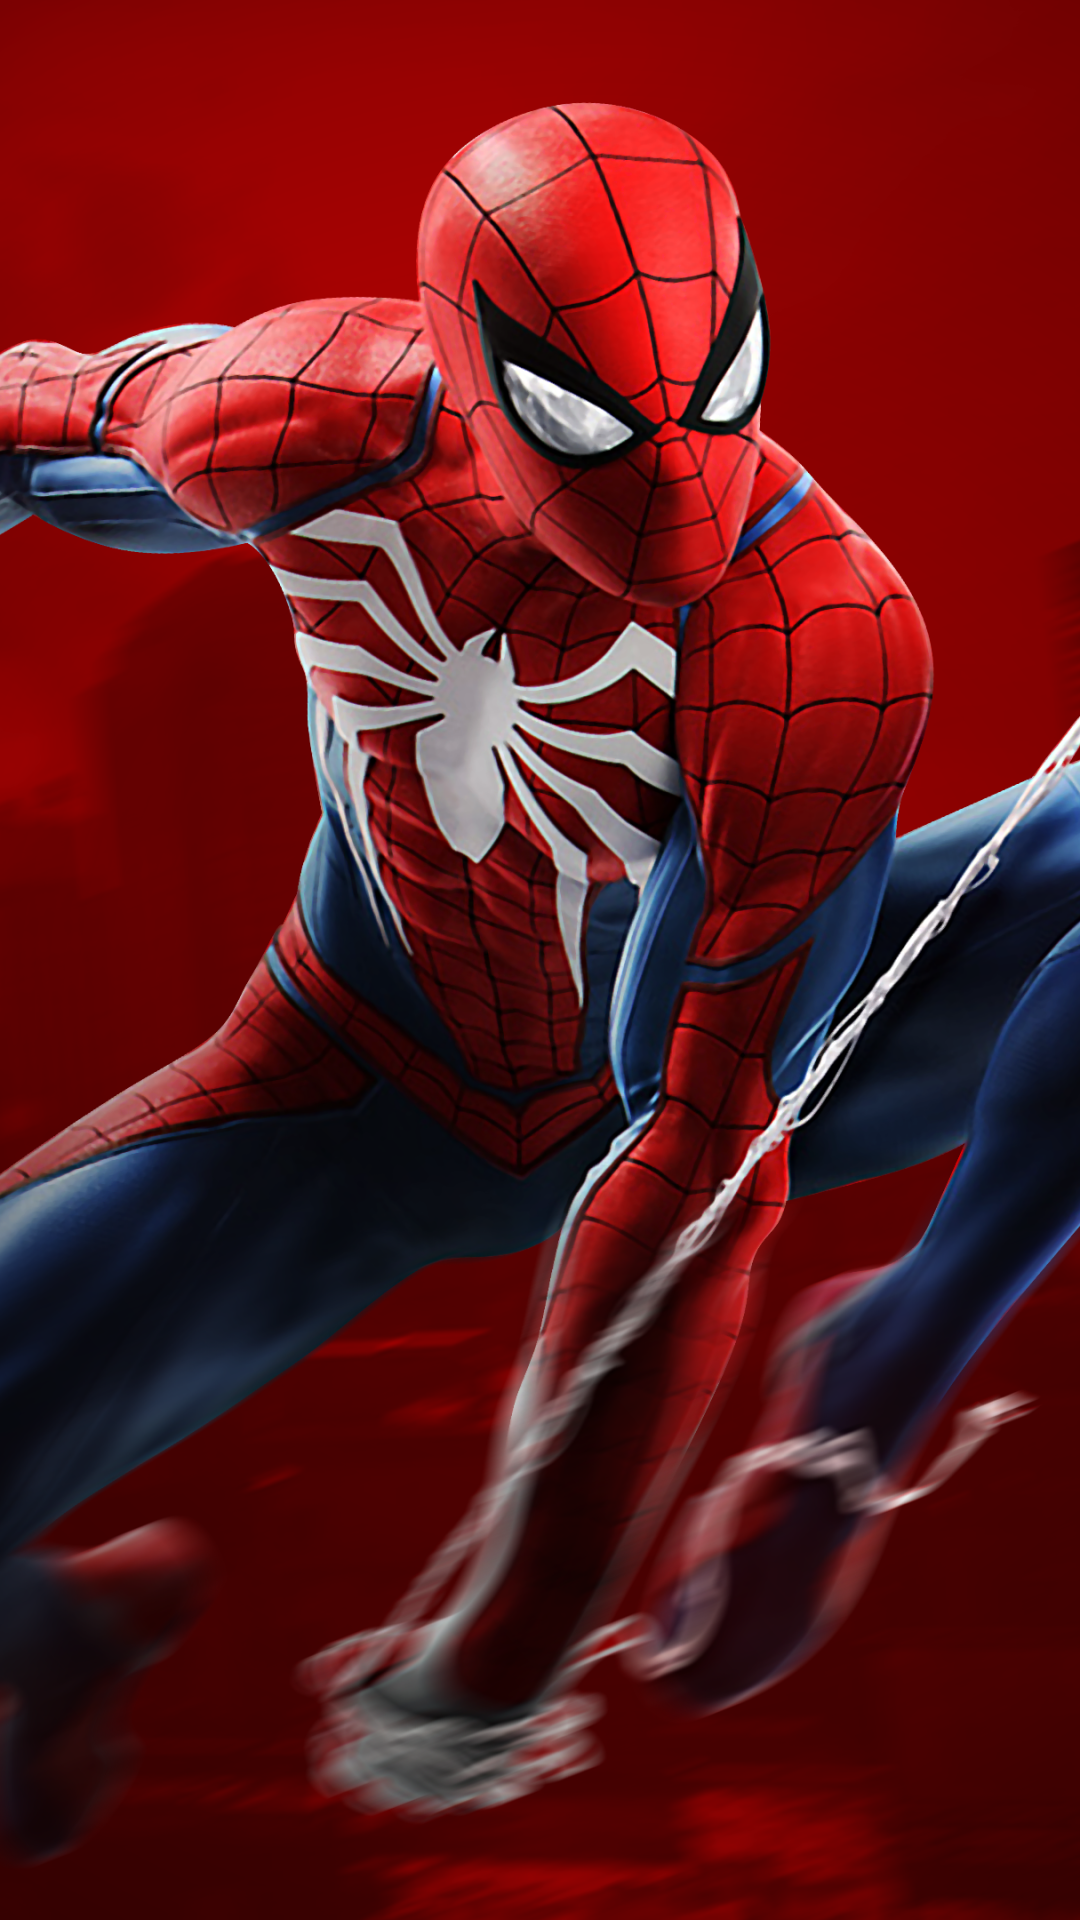 Spiderman Wallpaper 4k For Mobile